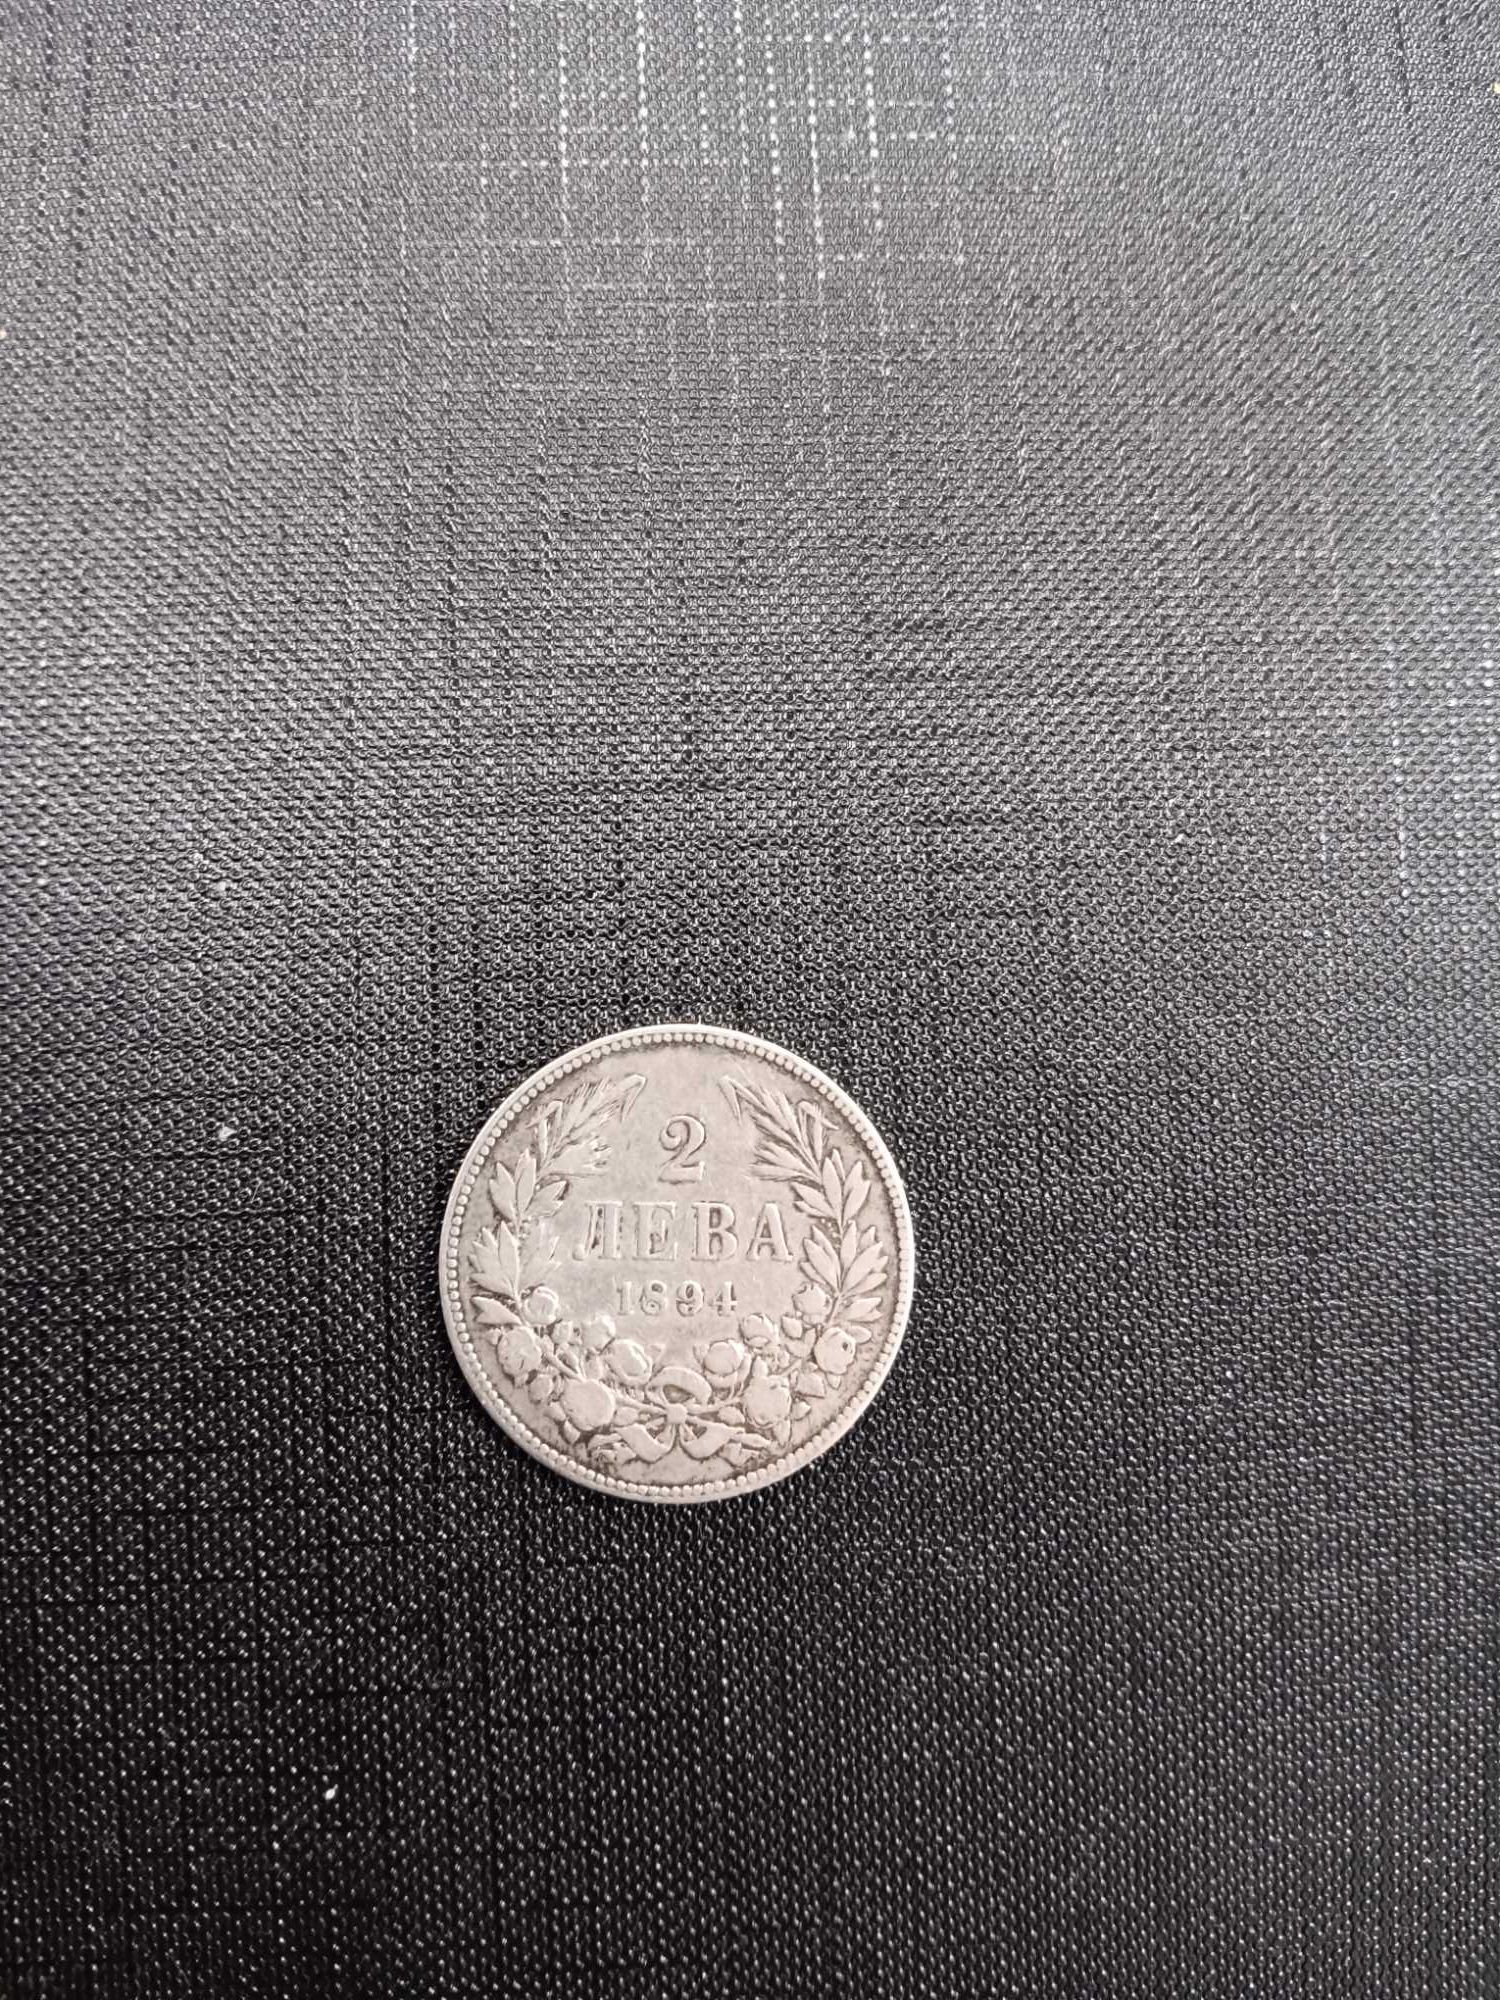 Монета 2 лева от 1894 година